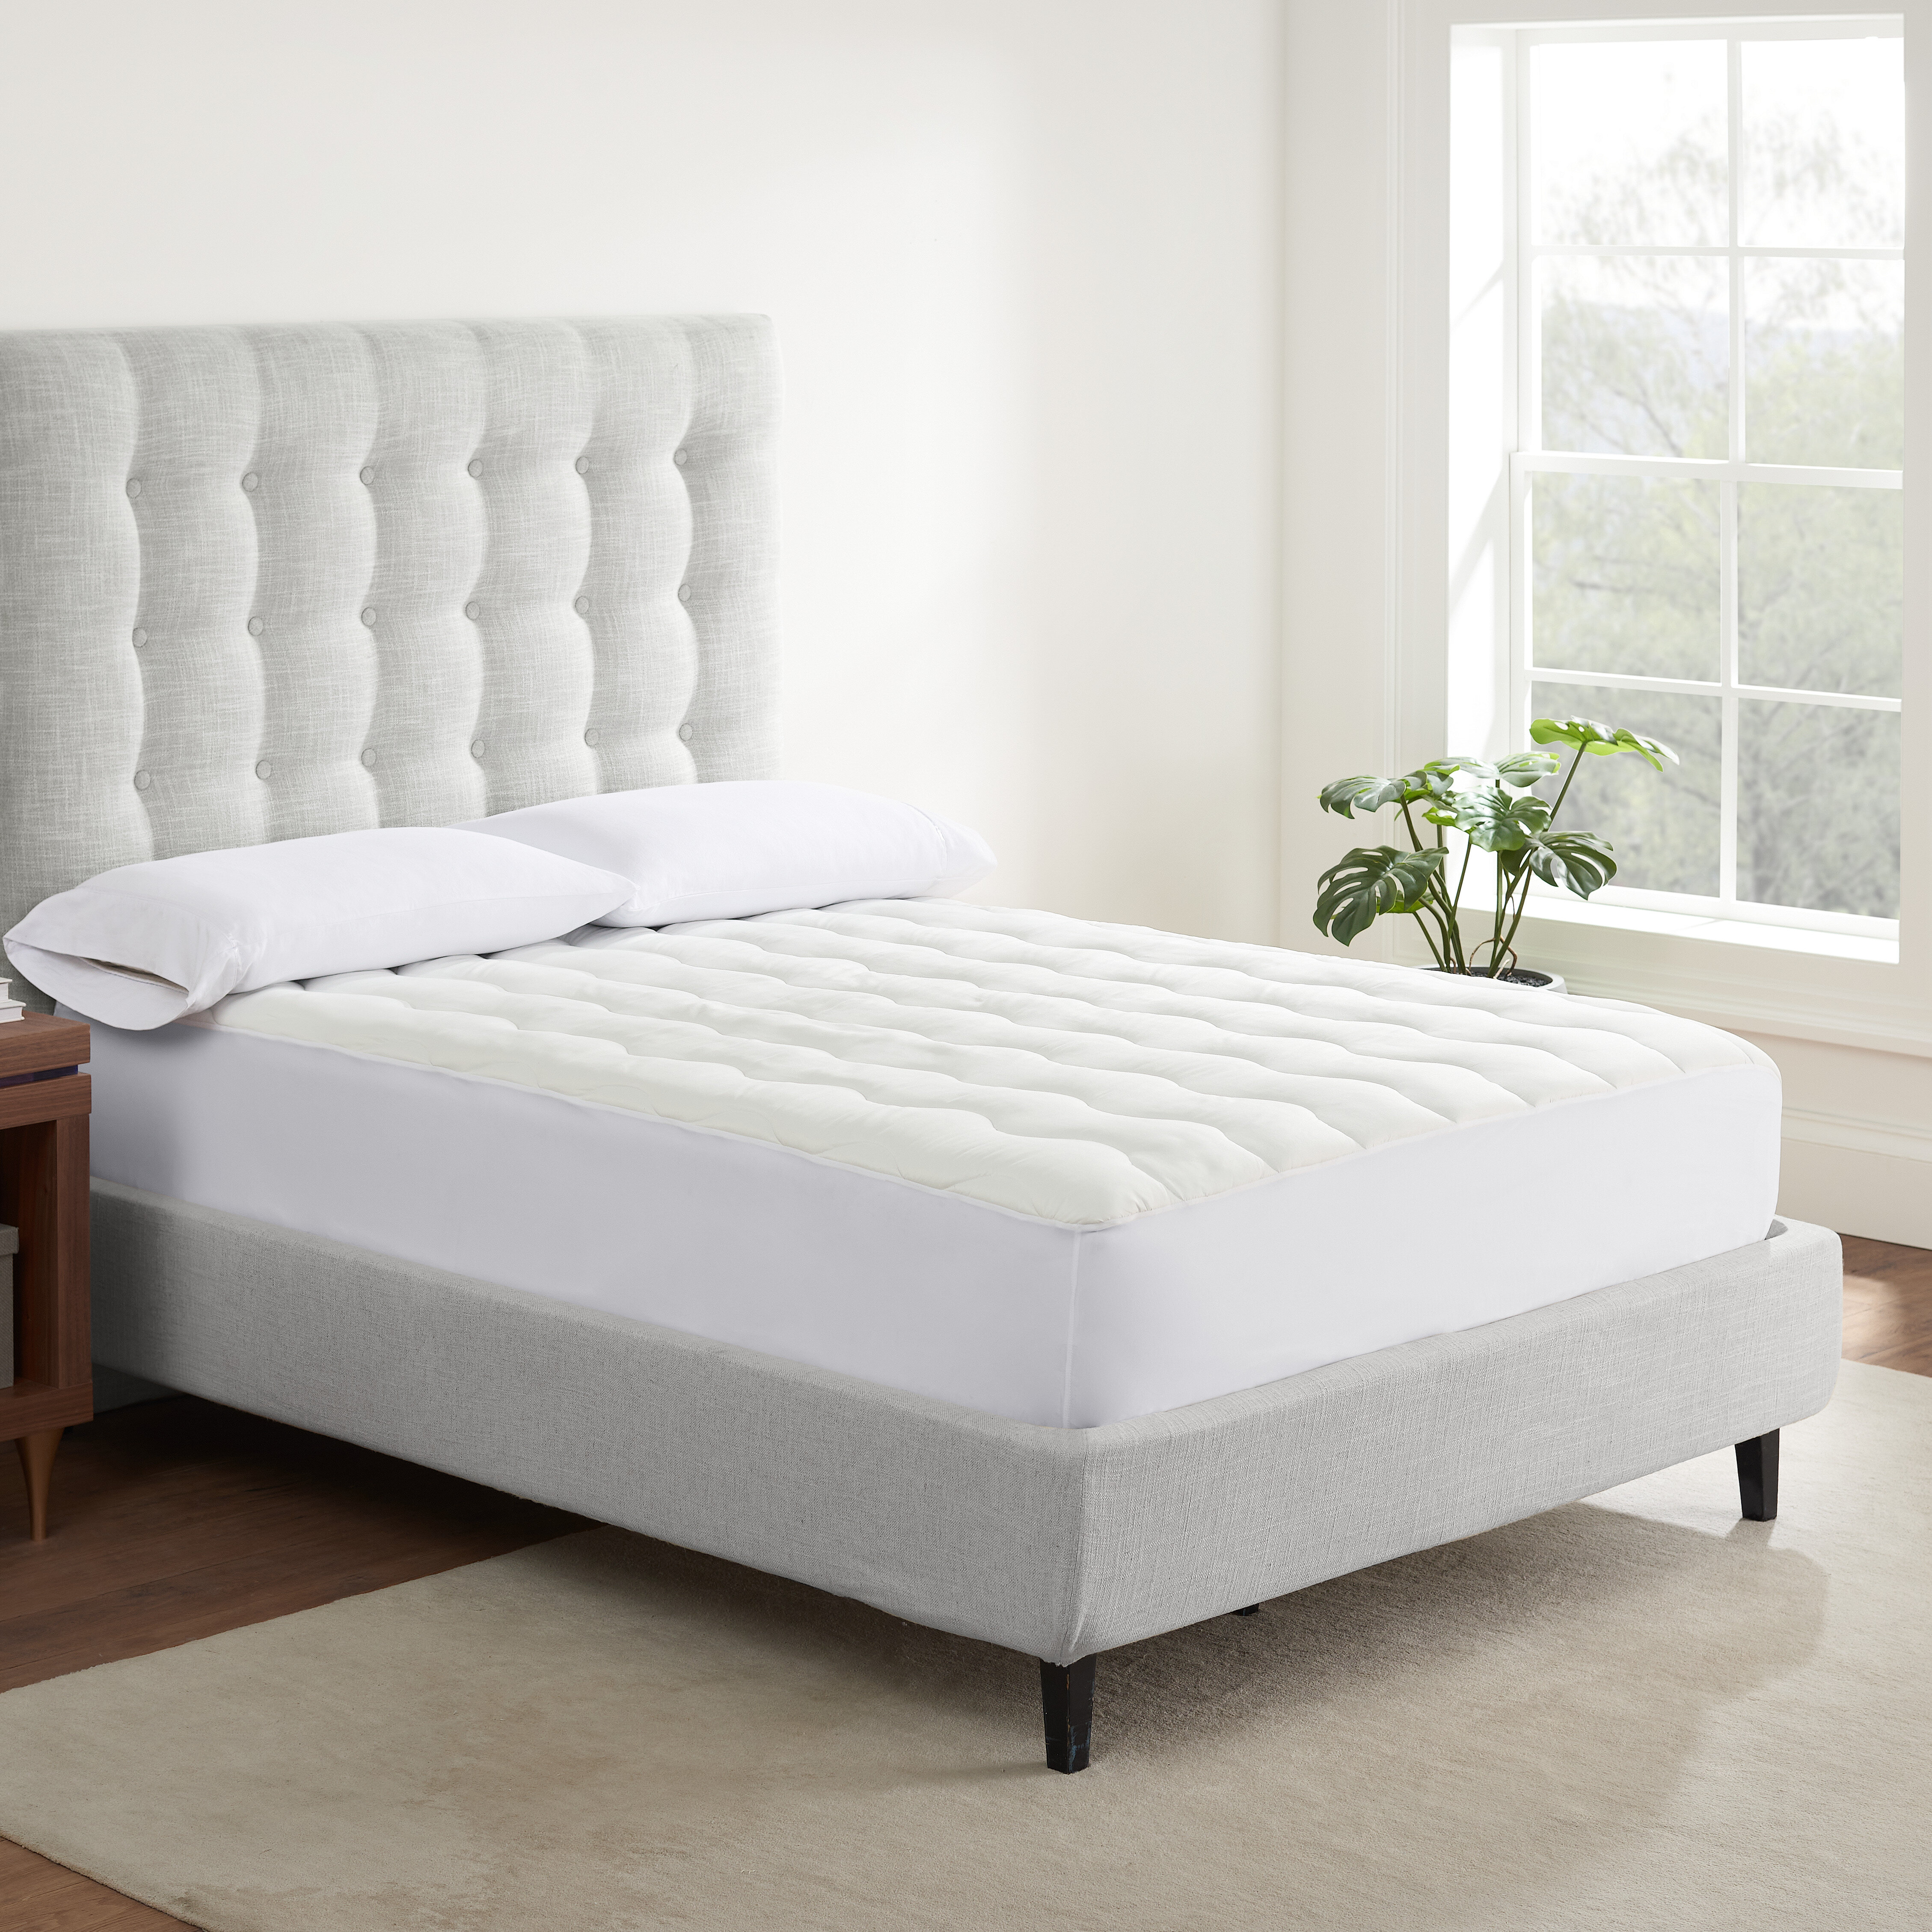 https://assets.wfcdn.com/im/97817484/compr-r85/1485/148564167/sleep-accessories-air-dry-extra-comfort-mattress-pad.jpg